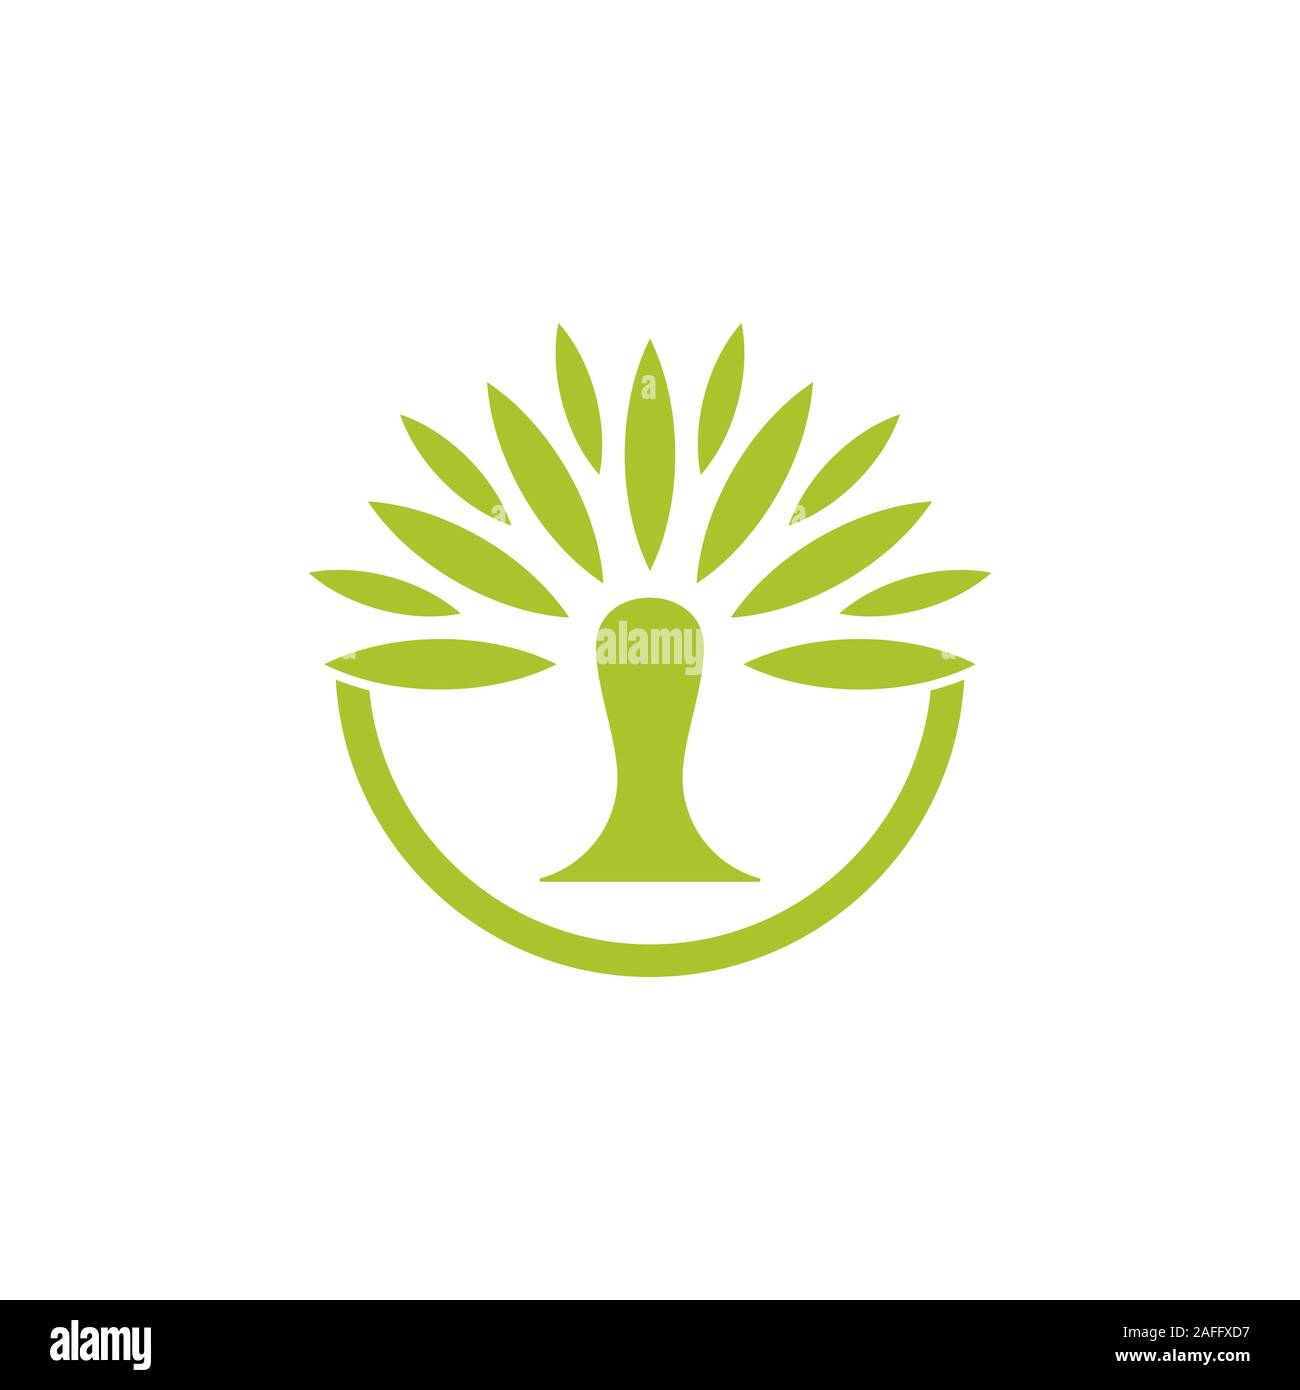 Abstract Green Palm Tree circle logo Vektor Stock Vektor